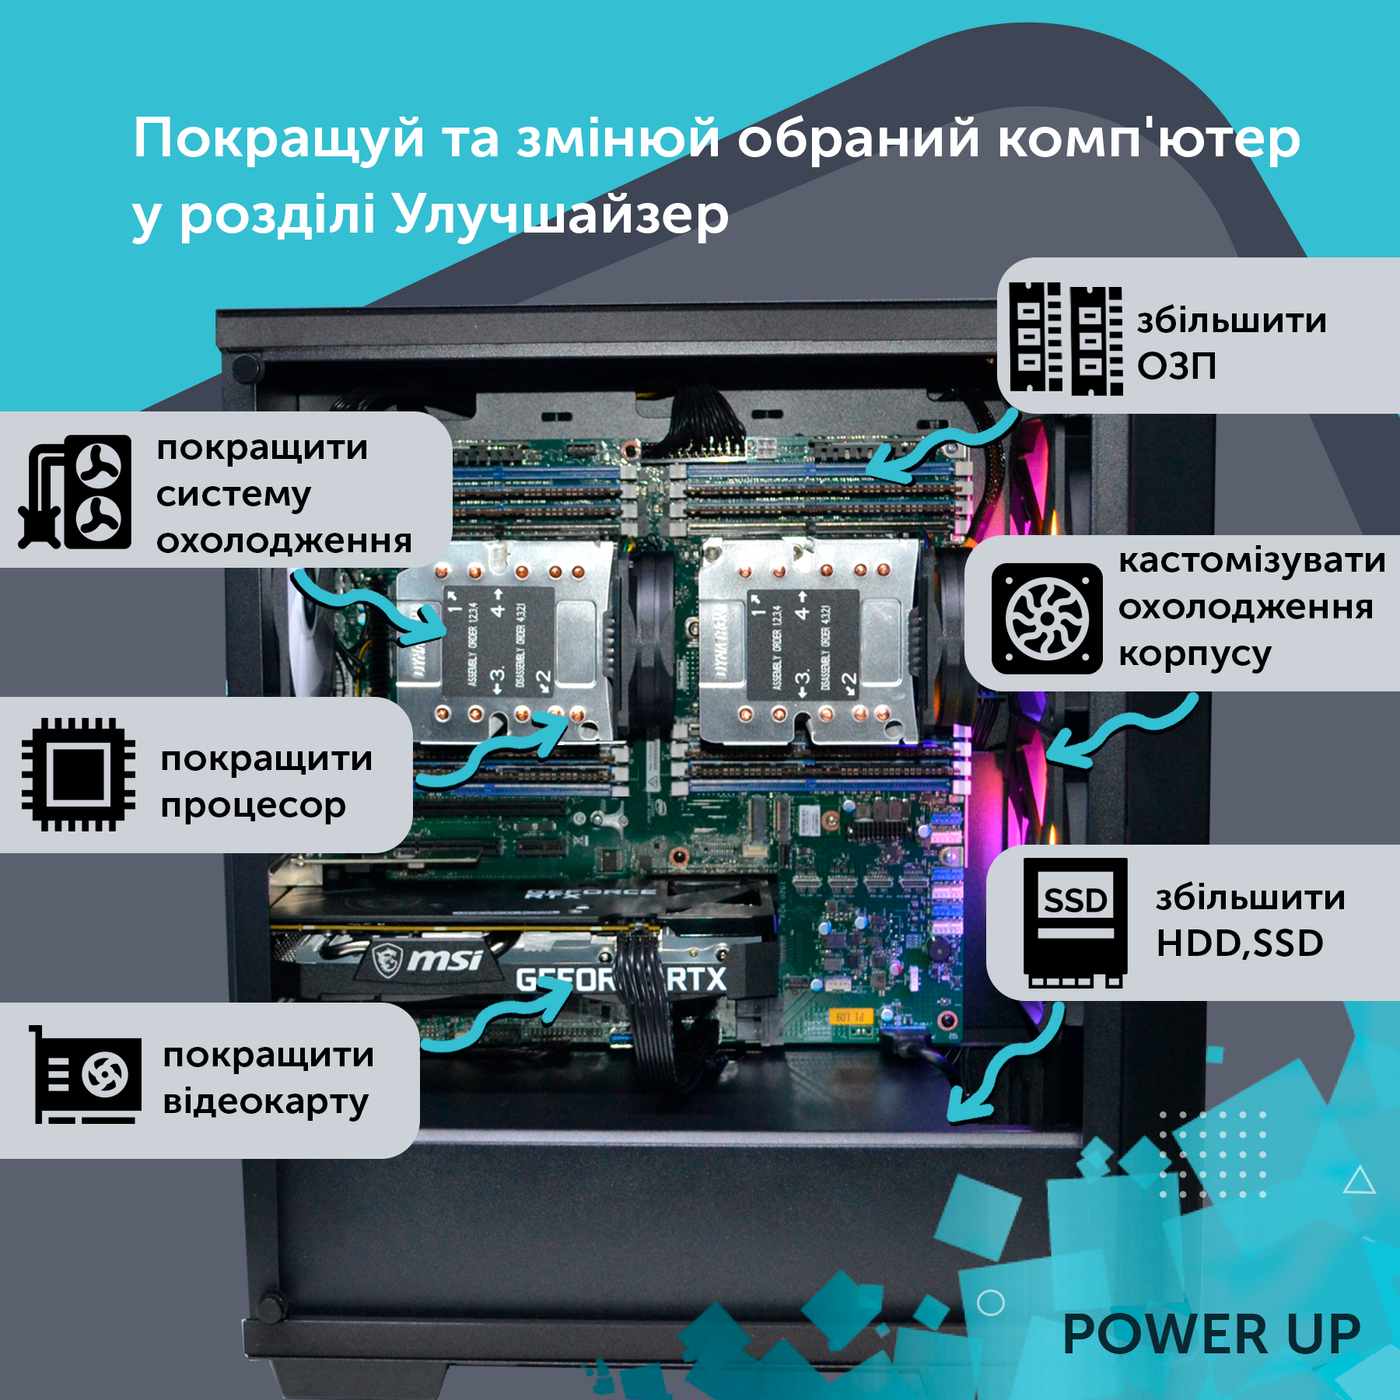 Робоча станція PowerUp Desktop #363 Ryzen 9 5950x/64 GB/SSD 1TB/GeForce RTX 4070Ti Super 16GB